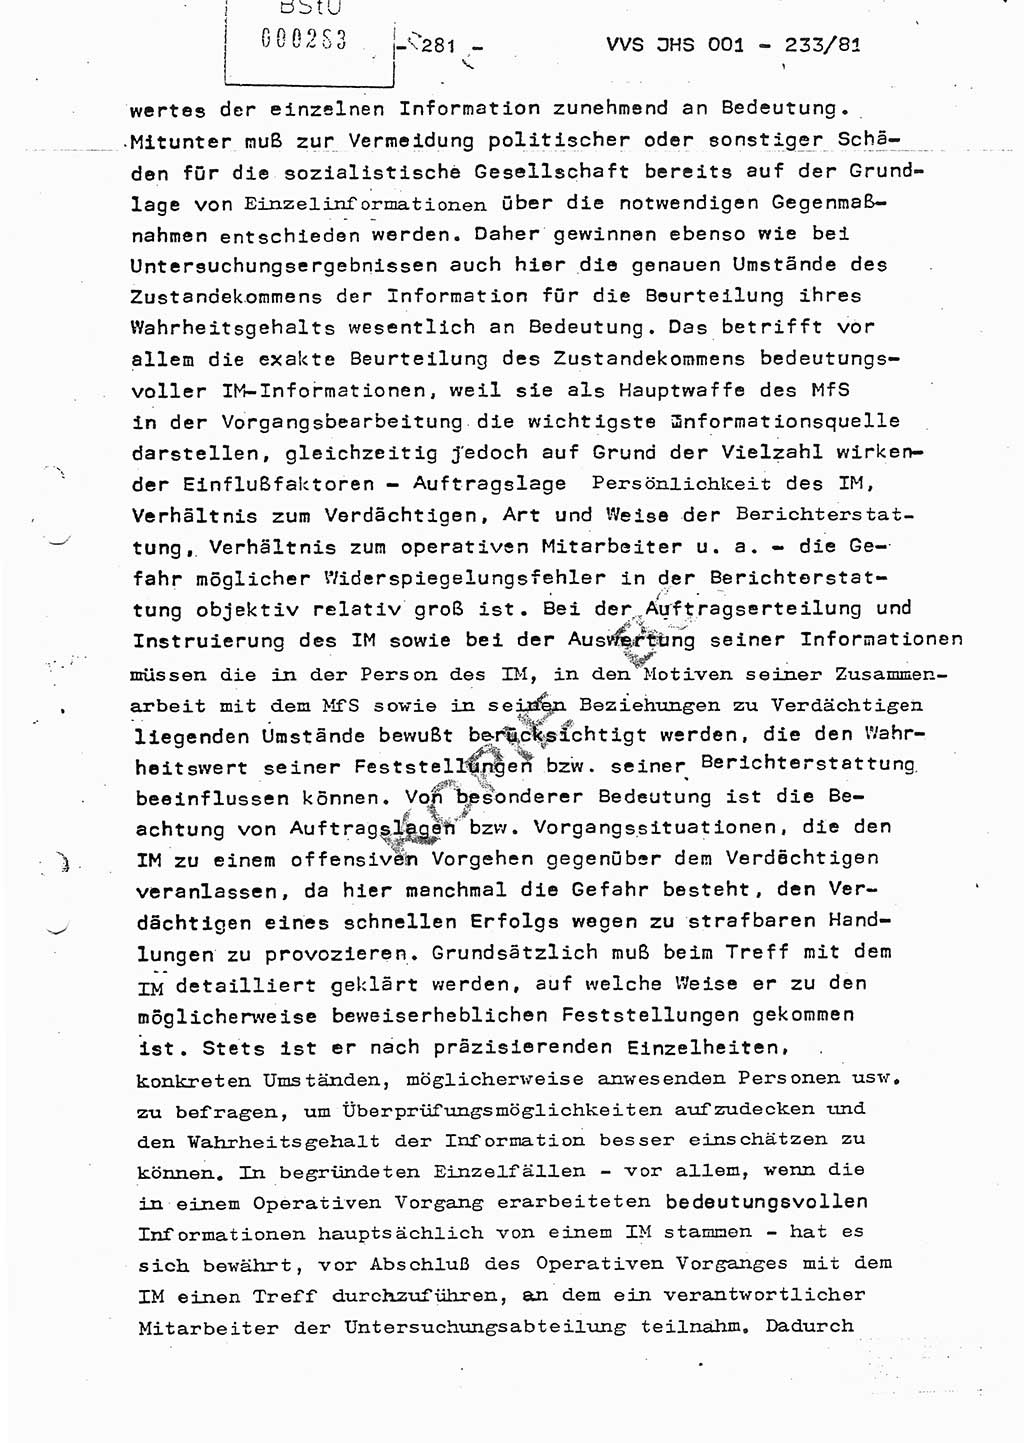 Dissertation Oberstleutnant Horst Zank (JHS), Oberstleutnant Dr. Karl-Heinz Knoblauch (JHS), Oberstleutnant Gustav-Adolf Kowalewski (HA Ⅸ), Oberstleutnant Wolfgang Plötner (HA Ⅸ), Ministerium für Staatssicherheit (MfS) [Deutsche Demokratische Republik (DDR)], Juristische Hochschule (JHS), Vertrauliche Verschlußsache (VVS) o001-233/81, Potsdam 1981, Blatt 281 (Diss. MfS DDR JHS VVS o001-233/81 1981, Bl. 281)